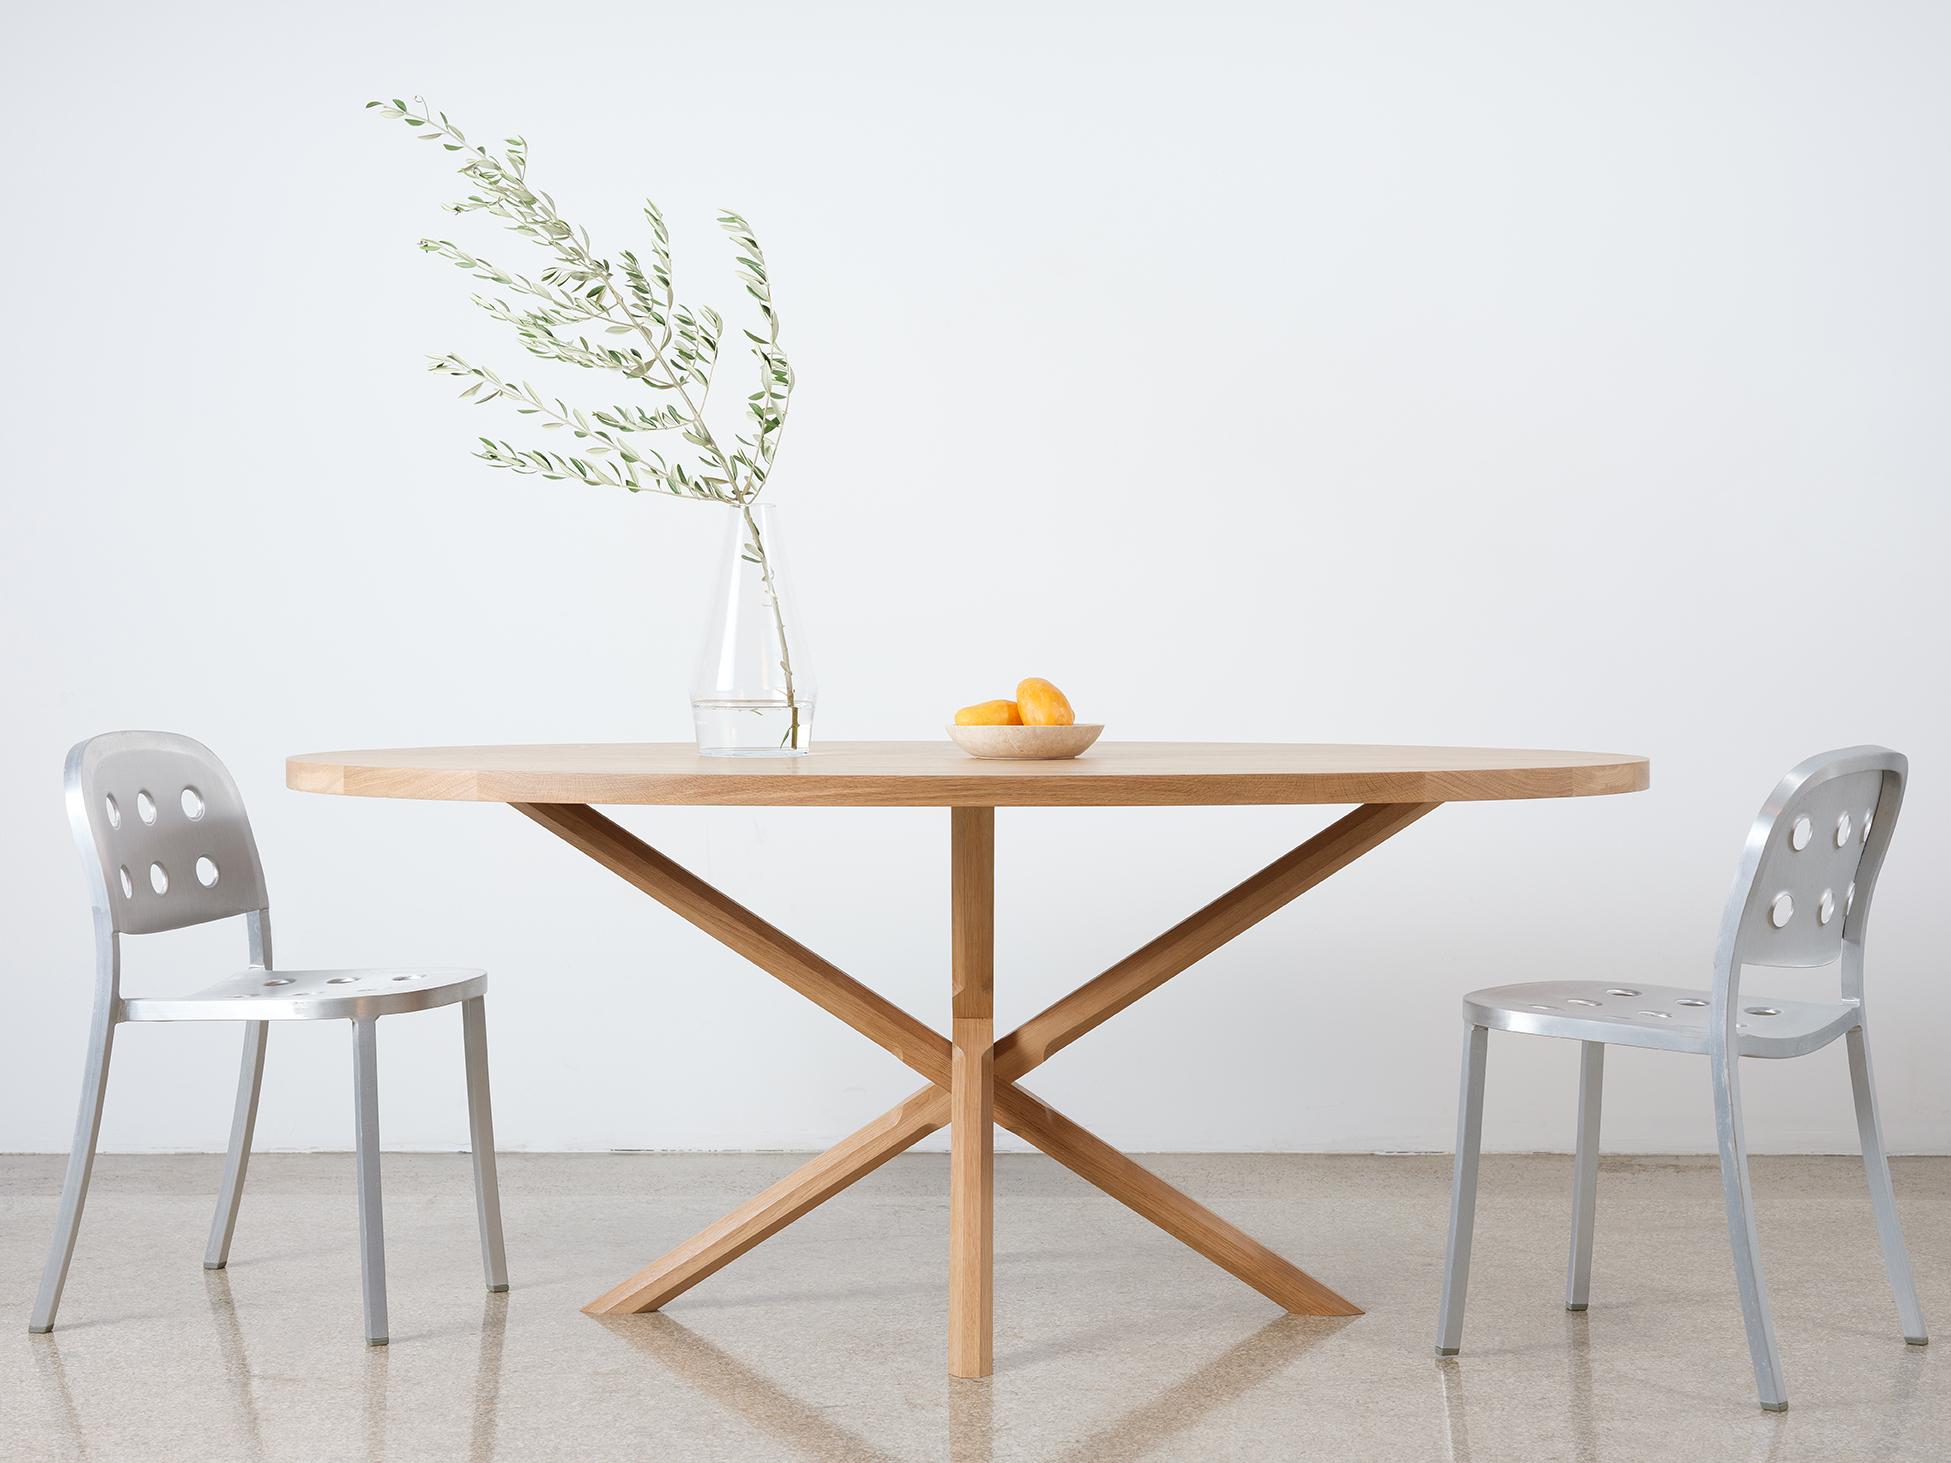 Dieser moderne, kompakte, ovale Sockeltisch ist komplett aus Hartholz gefertigt. Die klobige Tischplatte ruht auf einem X-förmigen Sockel mit kunstvoll geschnitzten polygonalen Beinen. Die Beine bestehen aus zwei separaten Komponenten, so dass sie